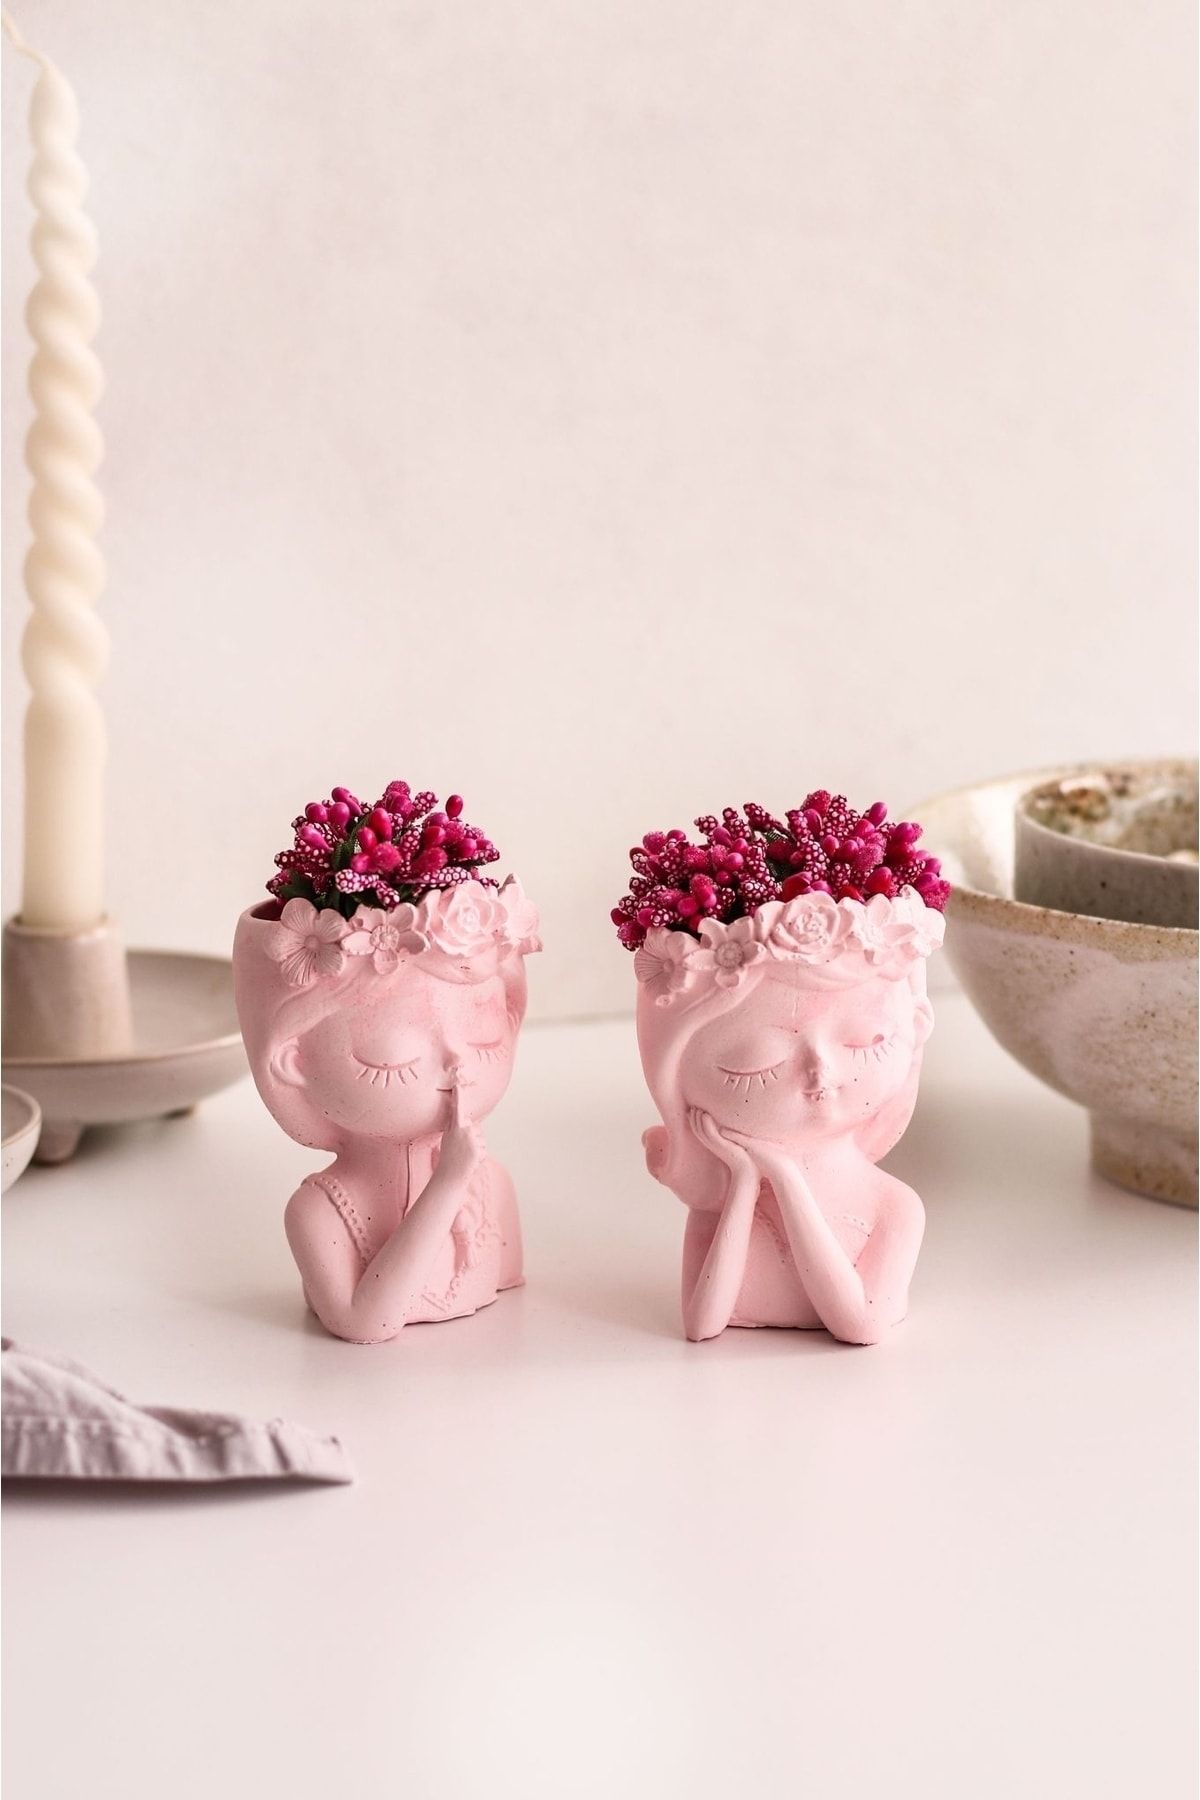 LALEZEN HOME Pembe İkili Çiçekli Kız Kardeşler Dekor Vazo (Çiçekler dahildir)